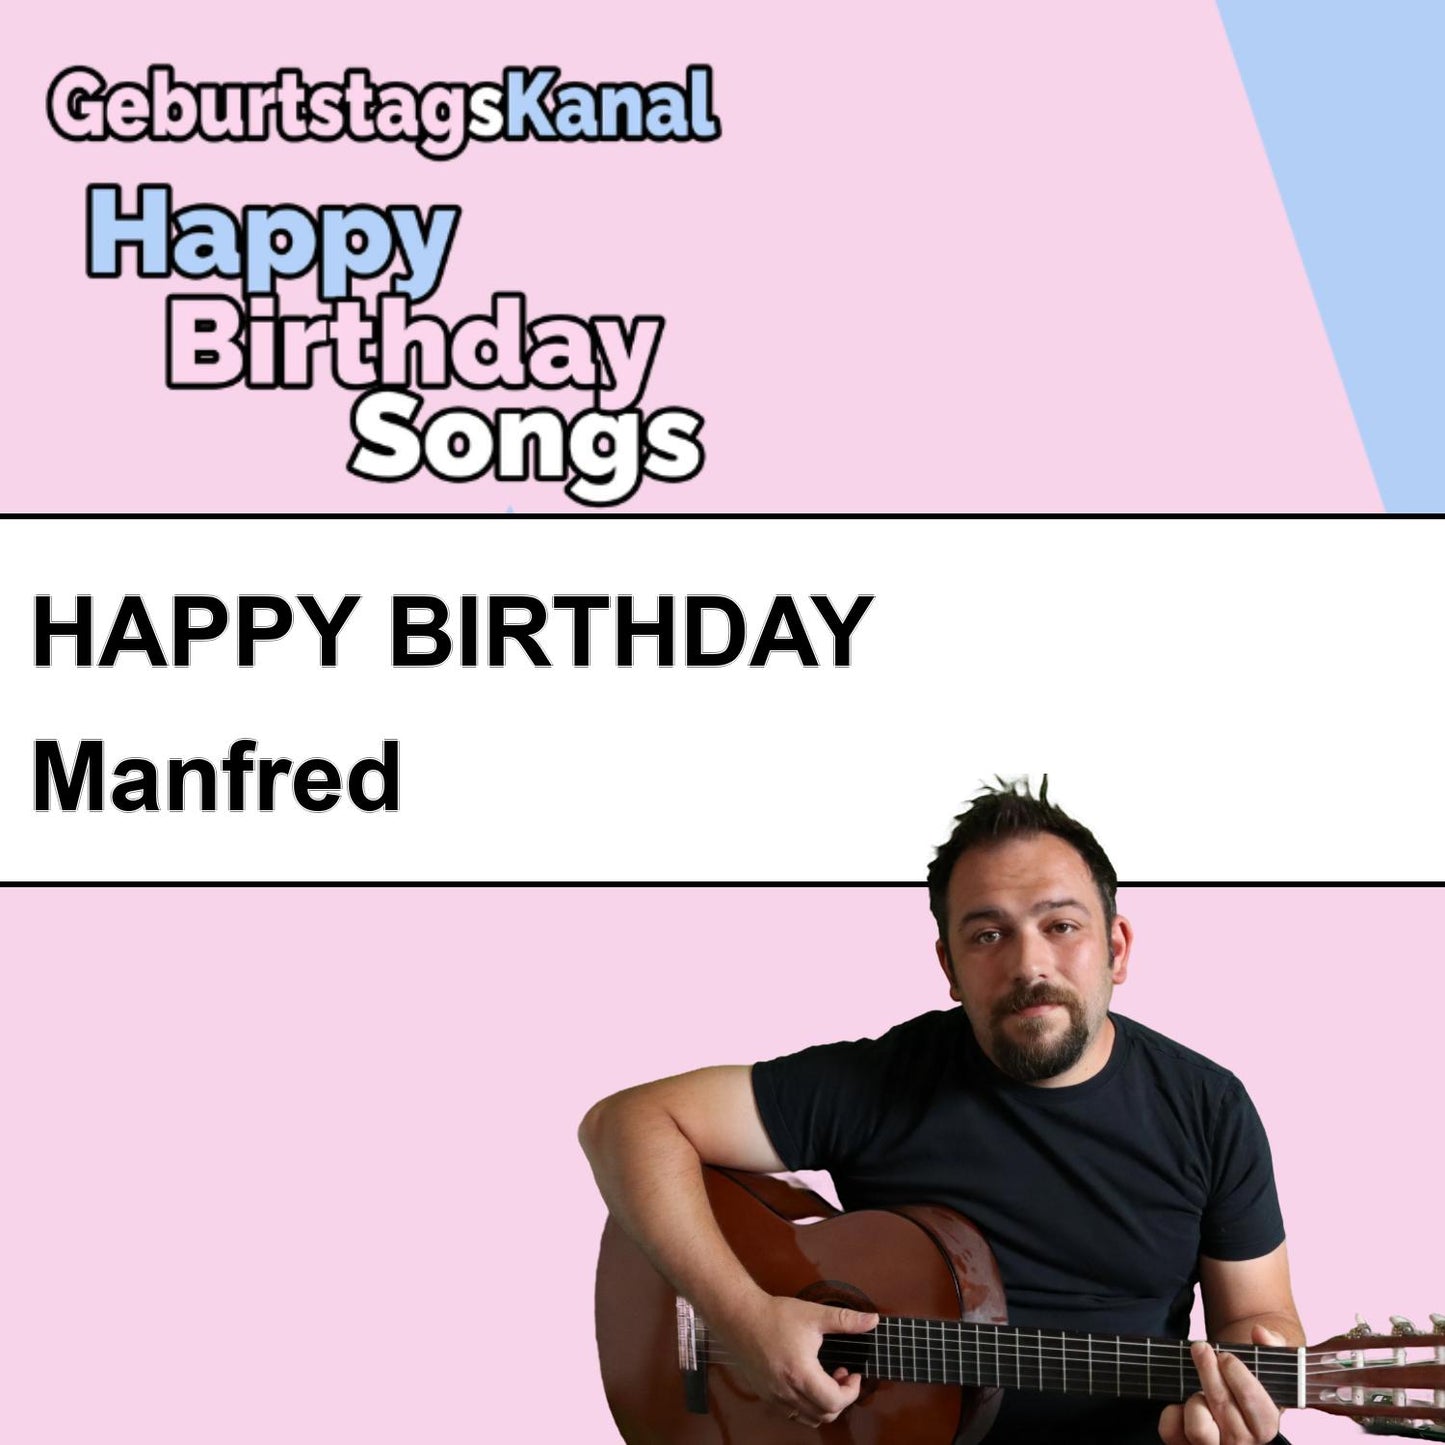 Produktbild Happy Birthday to you Manfred mit Wunschgrußbotschaft